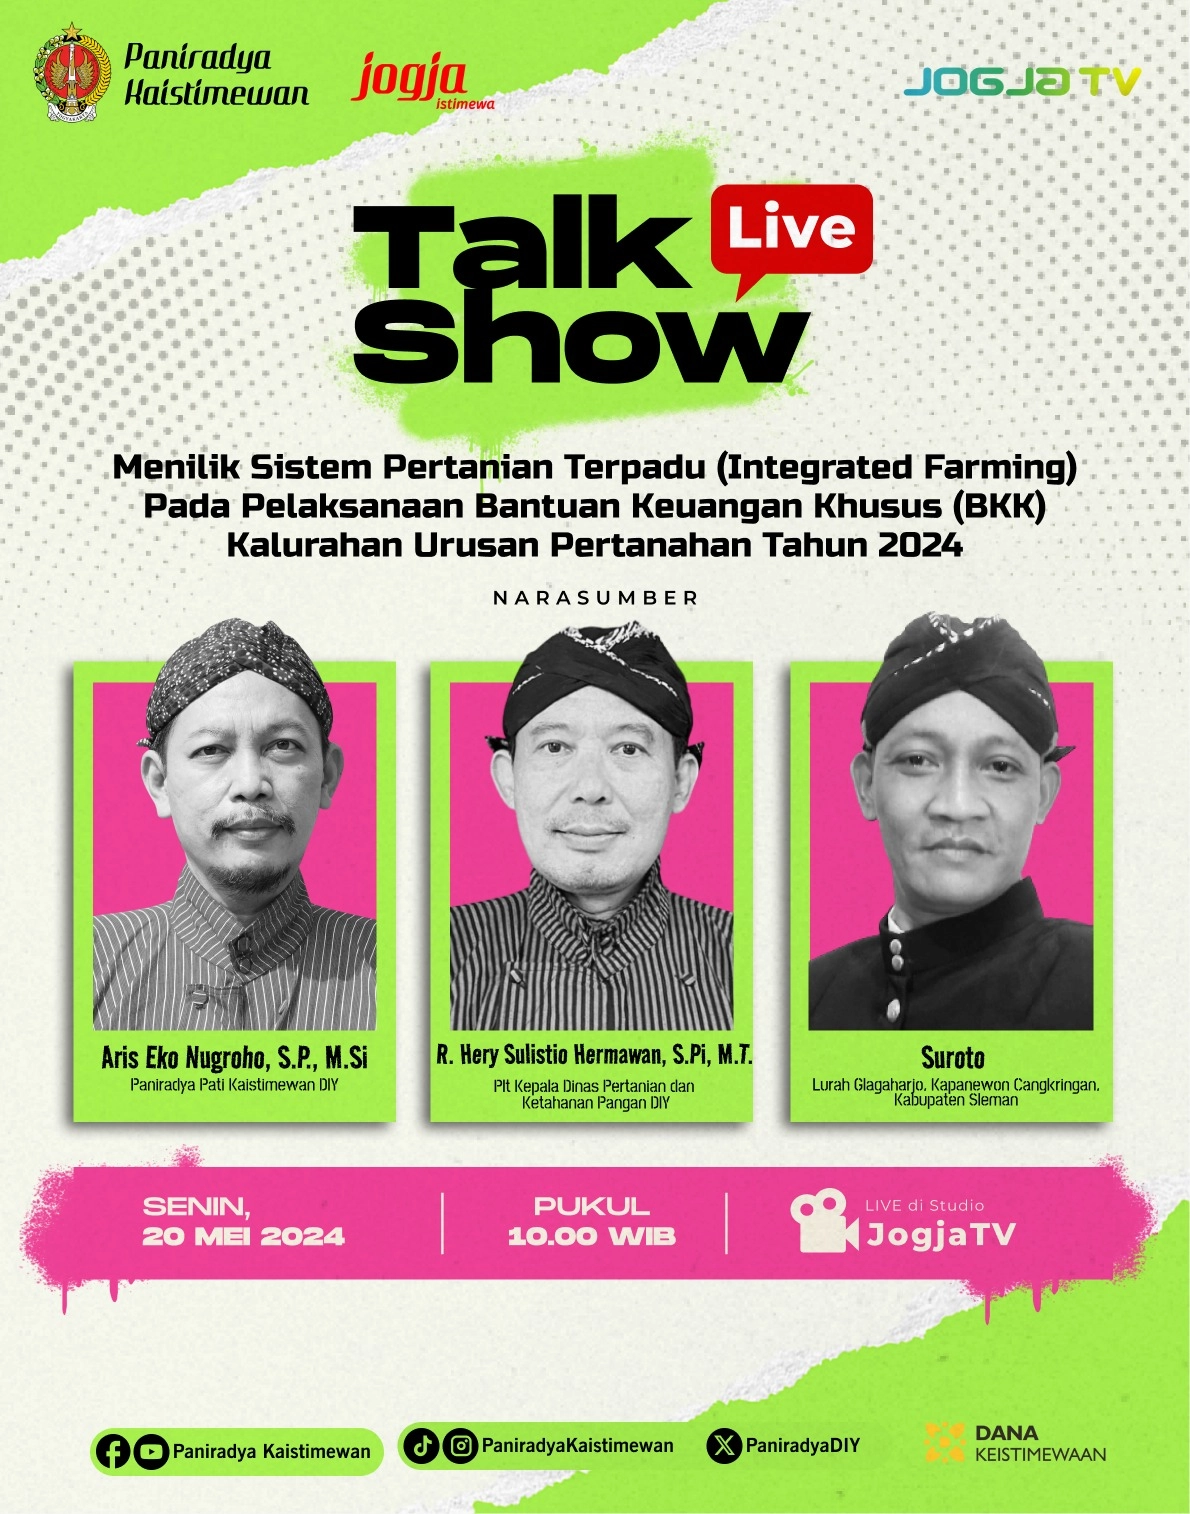 Live Talkshow - Menilik Sistem Pertanian Terpadu (Integrated Farming) pada Pelaksanaan BKK Kalurahan Urusan Pertanahan Tahun 2024